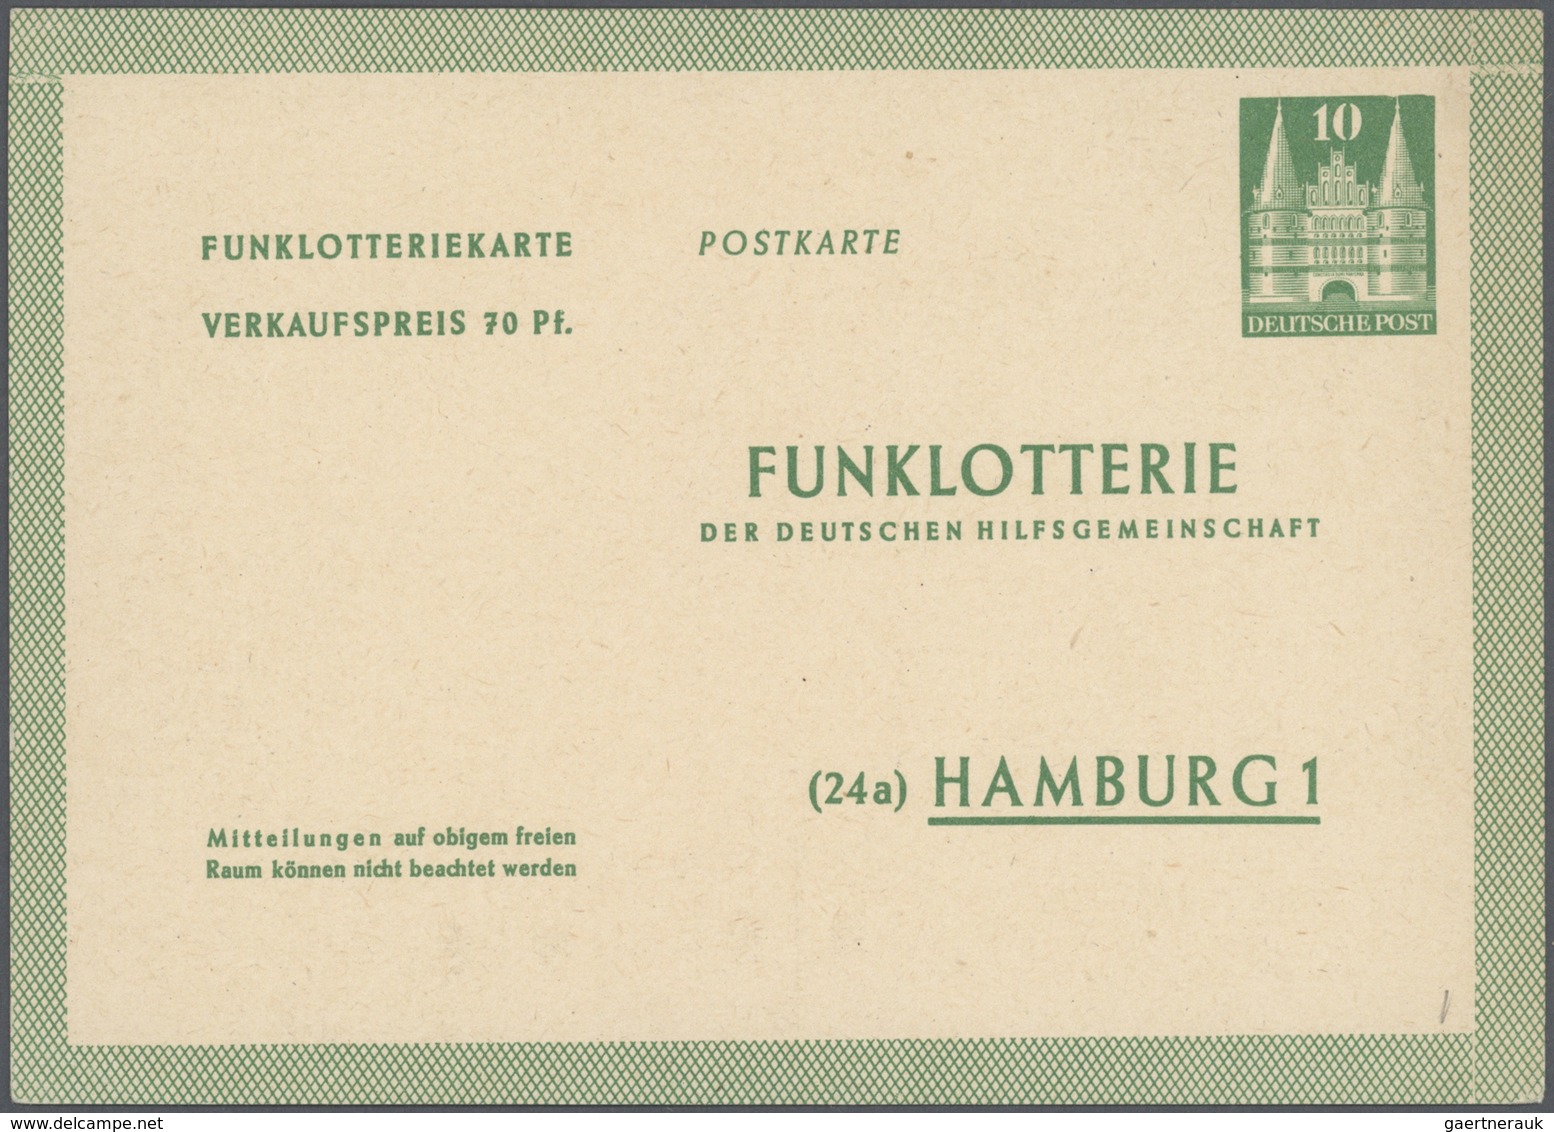 Bundesrepublik - Ganzsachen: 1948/2011. Umfangreiche Sammlung mit einigen hundert Karten, Luftpostle